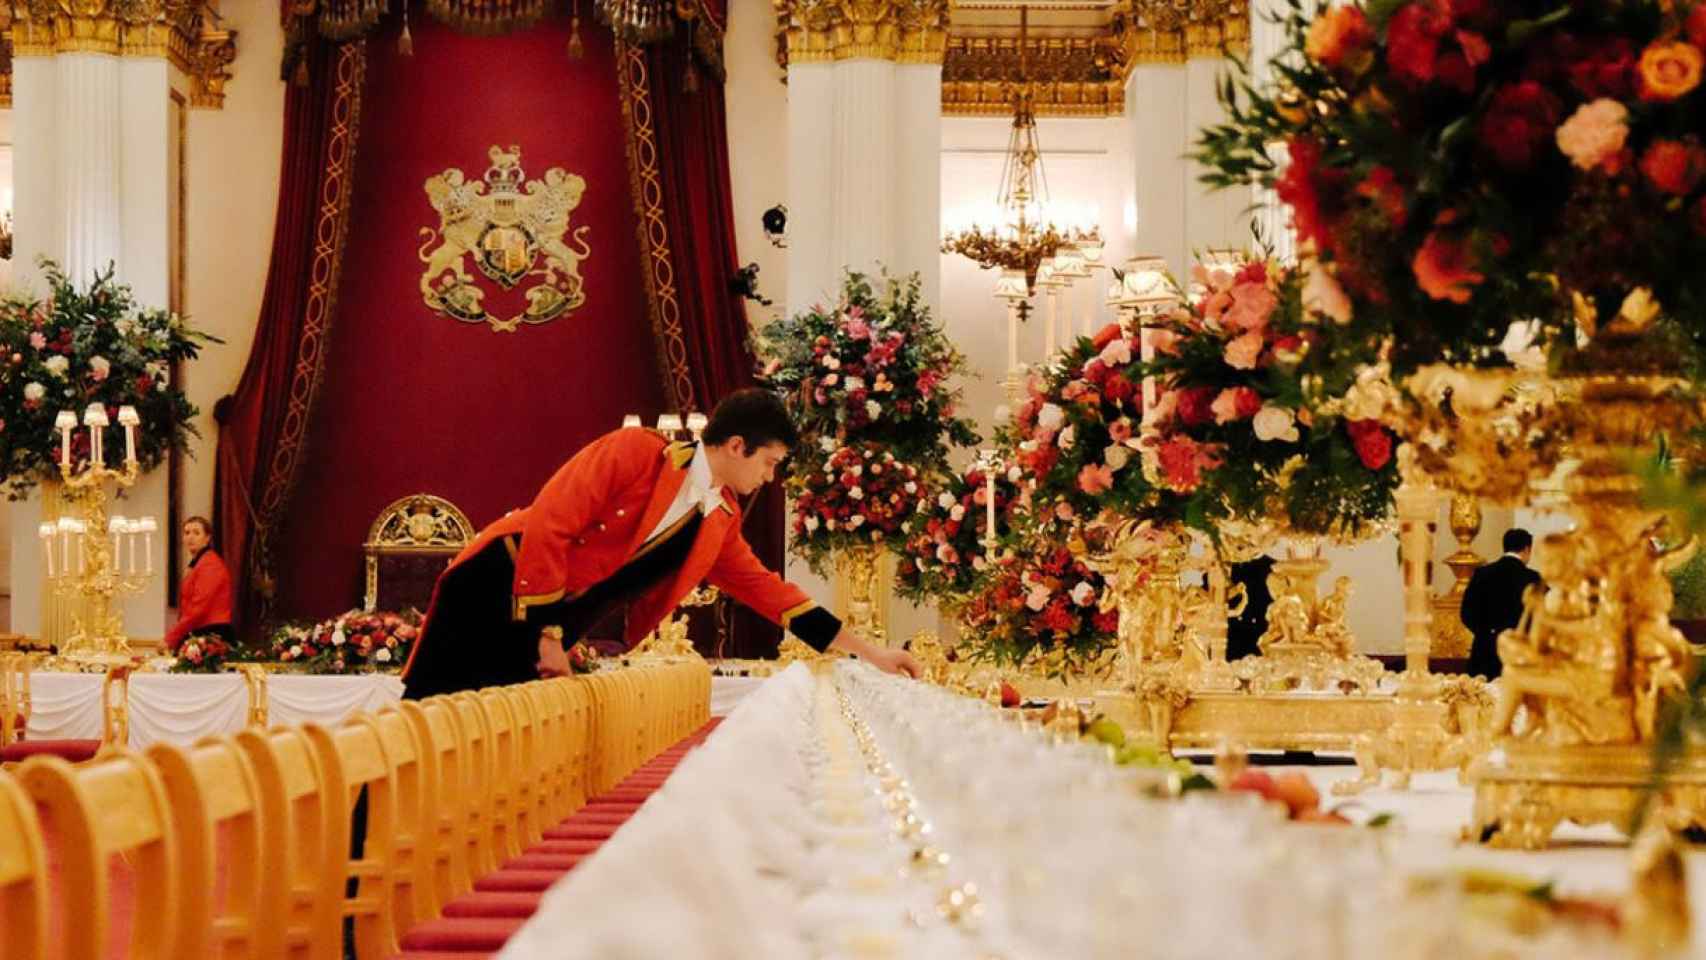 Un empleado de Buckingham preparando la mesa para un banquete.